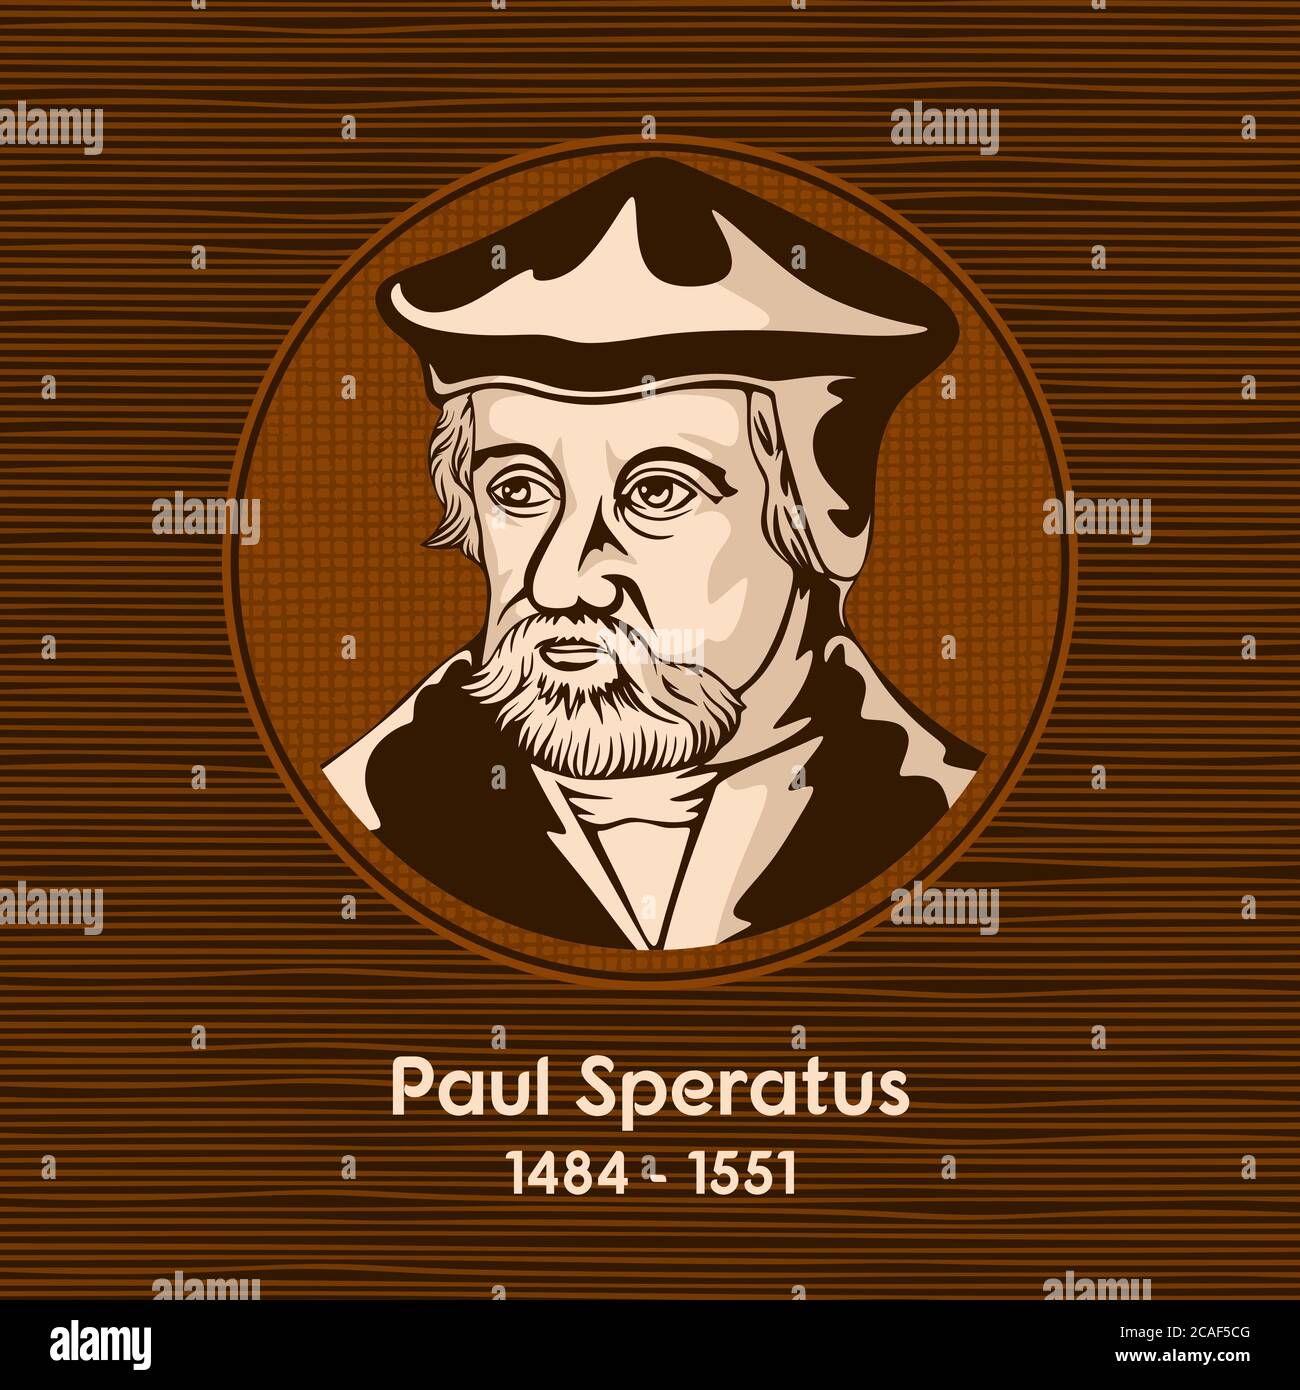 Paul Speratus (1484 - 1551) était un prêtre catholique qui devint un prédicateur protestant, réformateur et hymne. Illustration de Vecteur